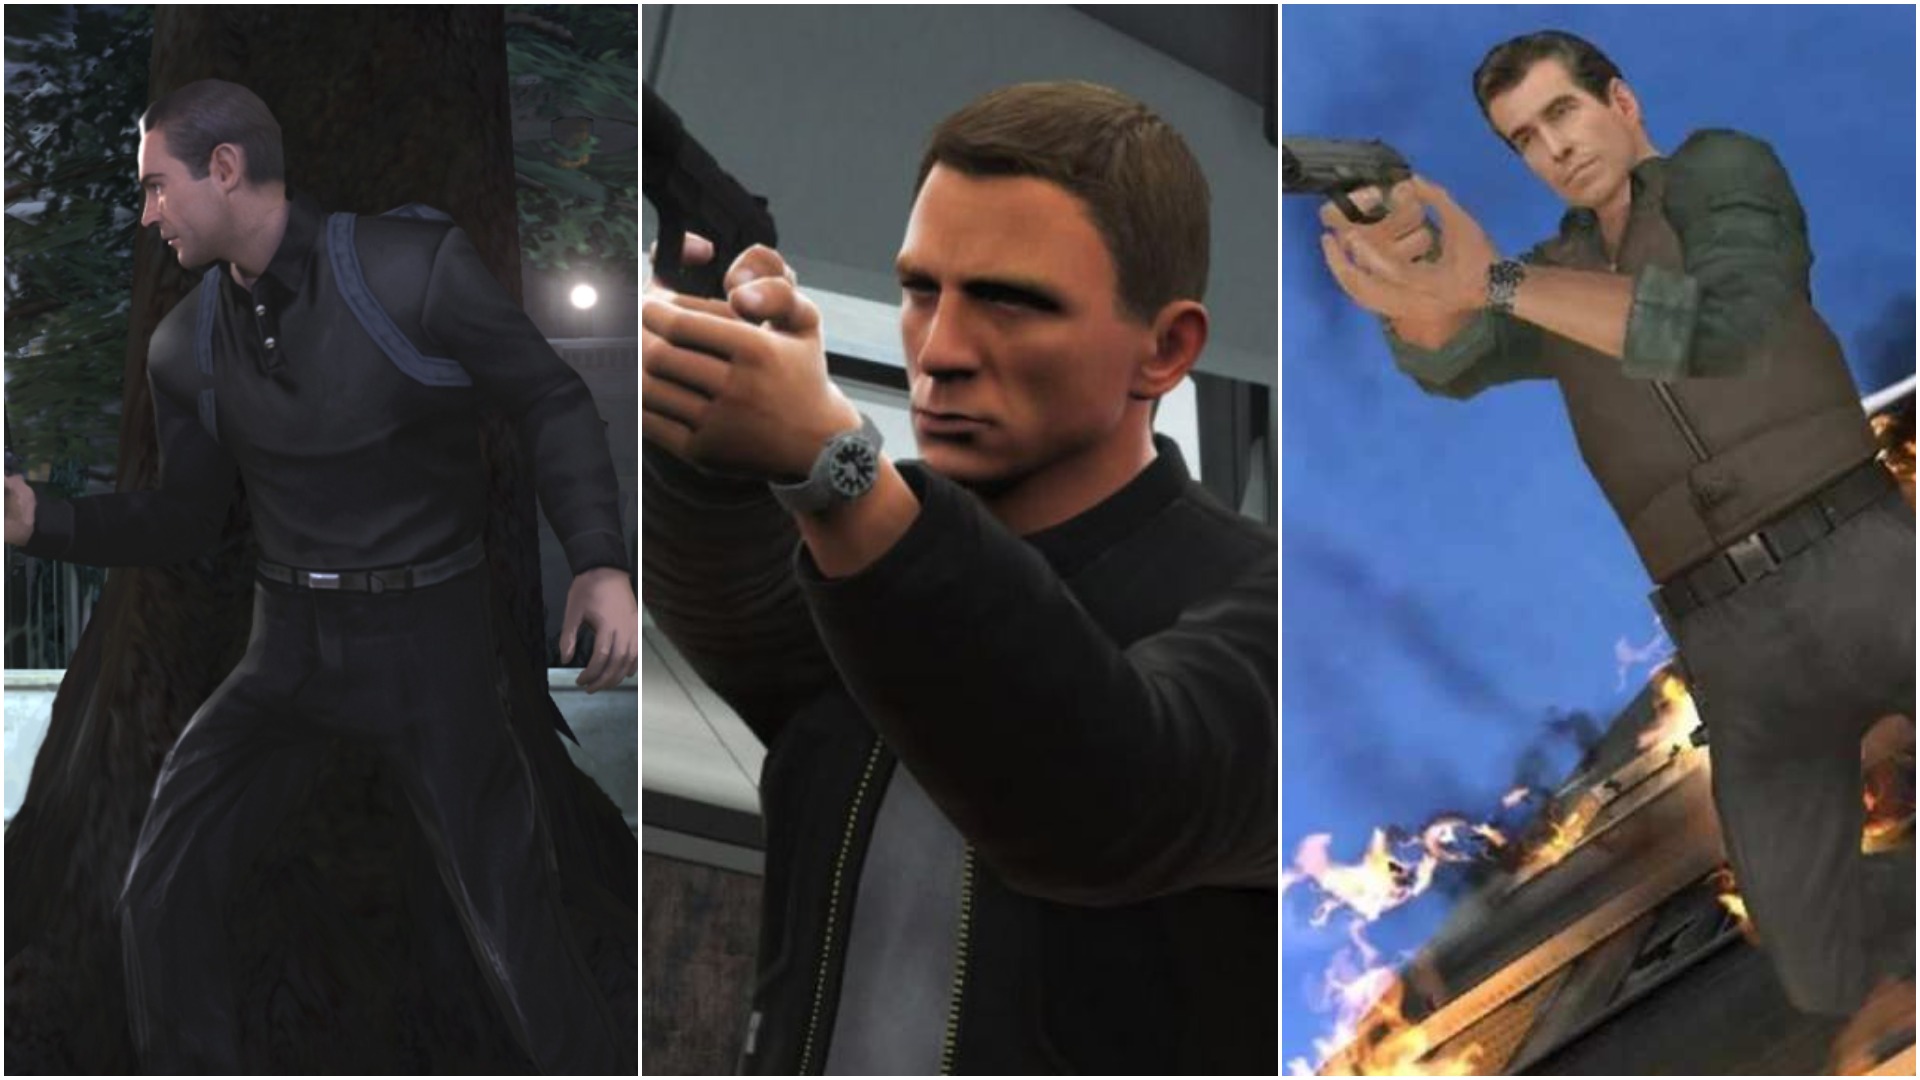  Hacks - 007: Agent Under Fire Reloaded